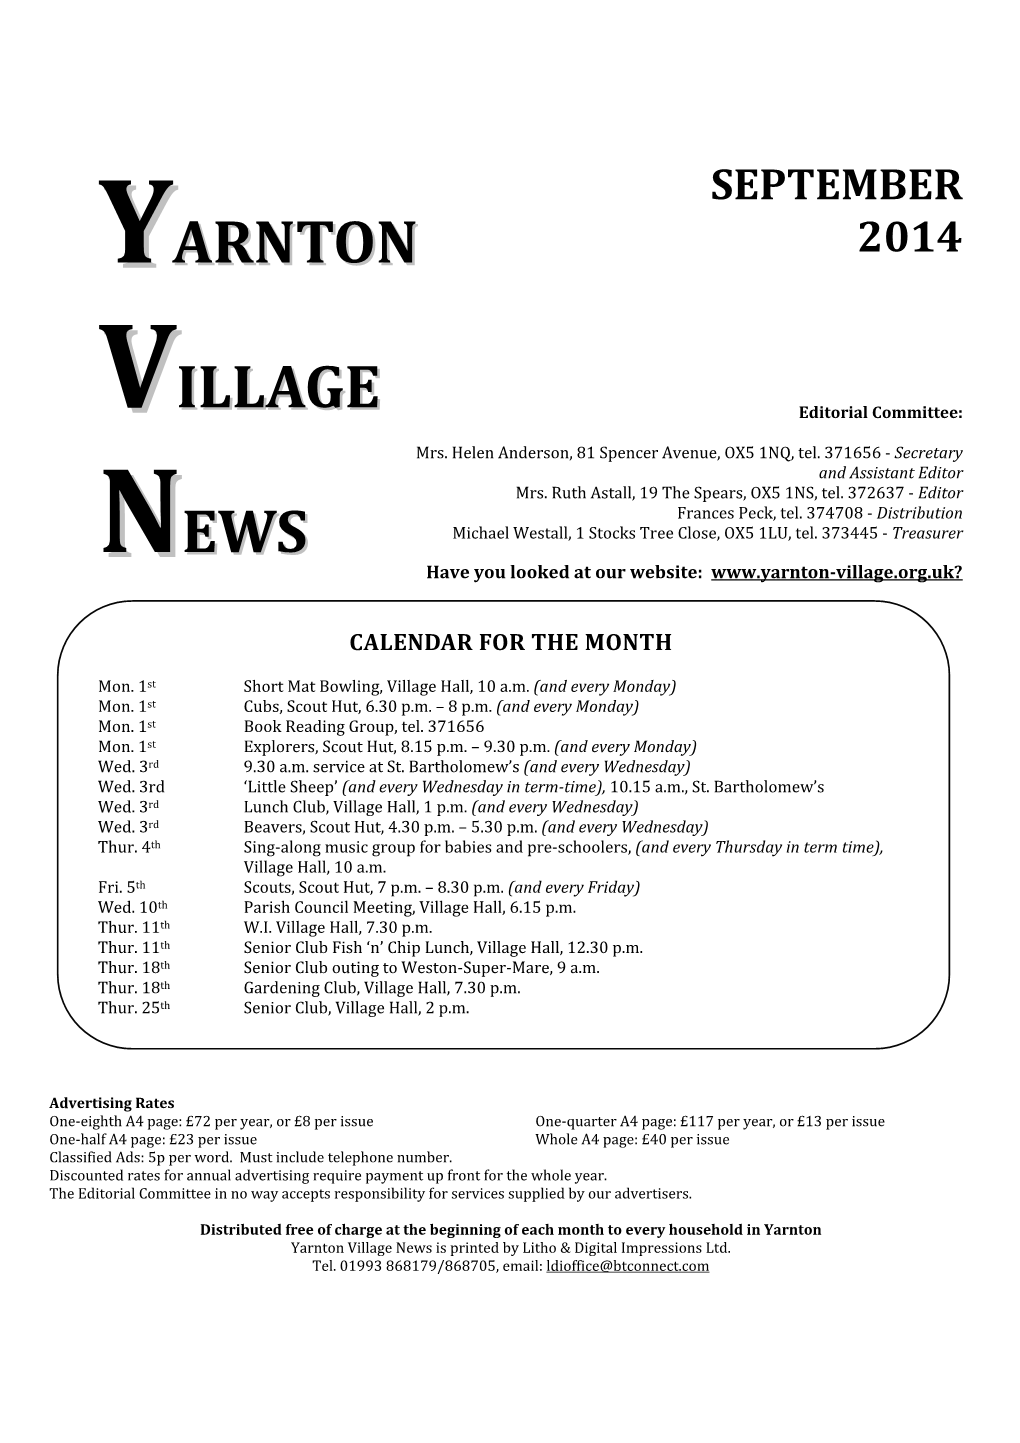 Yarnton Village News Is Printed by Litho & Digital Impressions Ltd